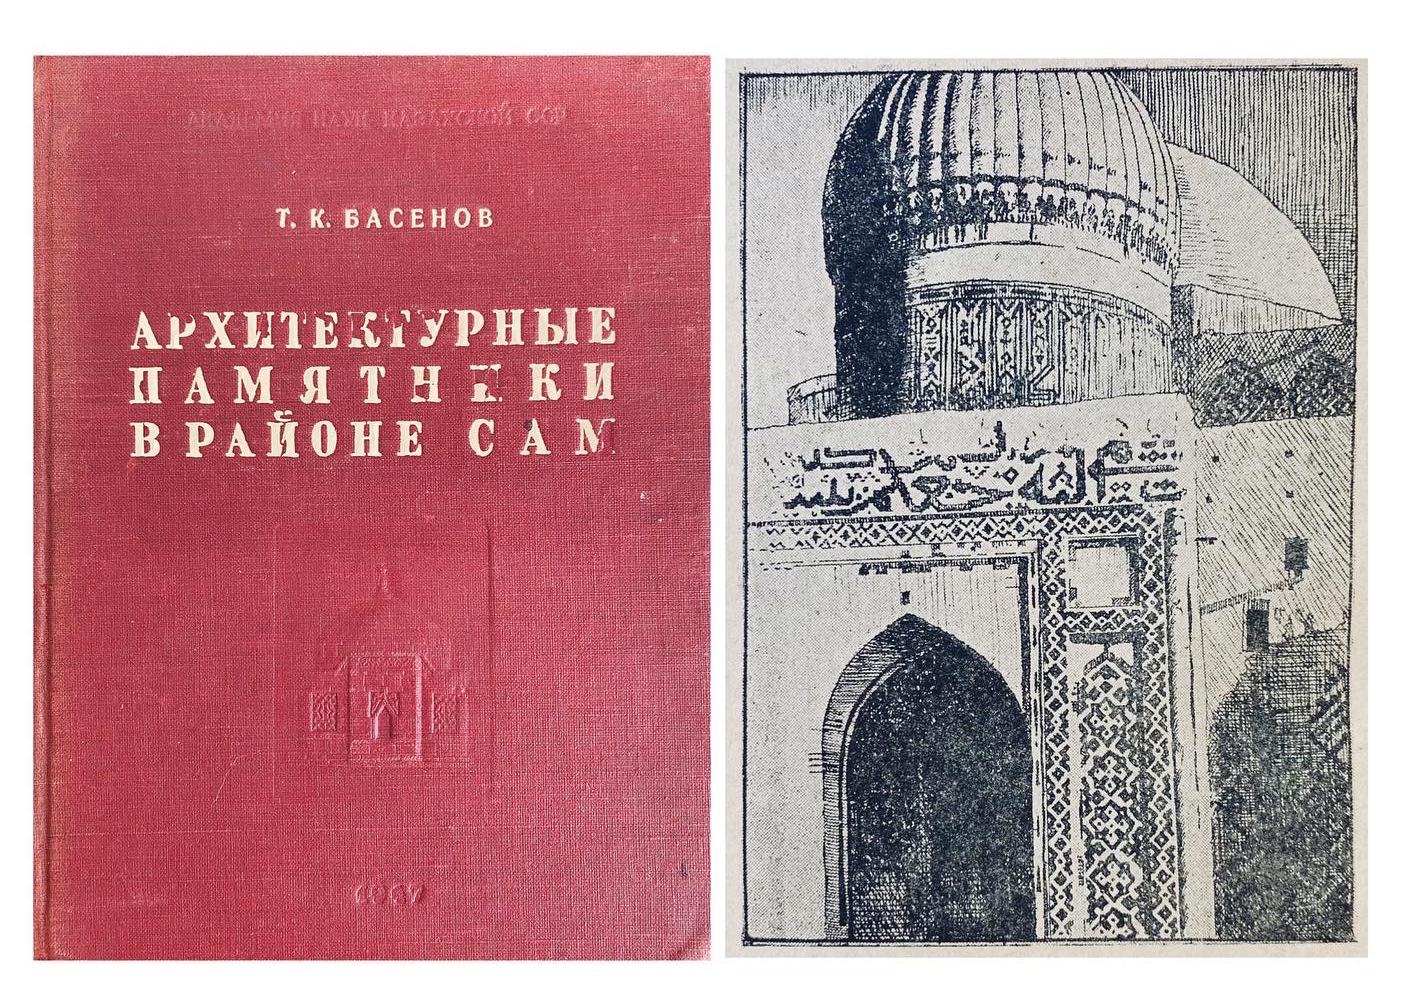 Купить книгу Т.К. Басенова (Архитектурные памятники в районе сам)